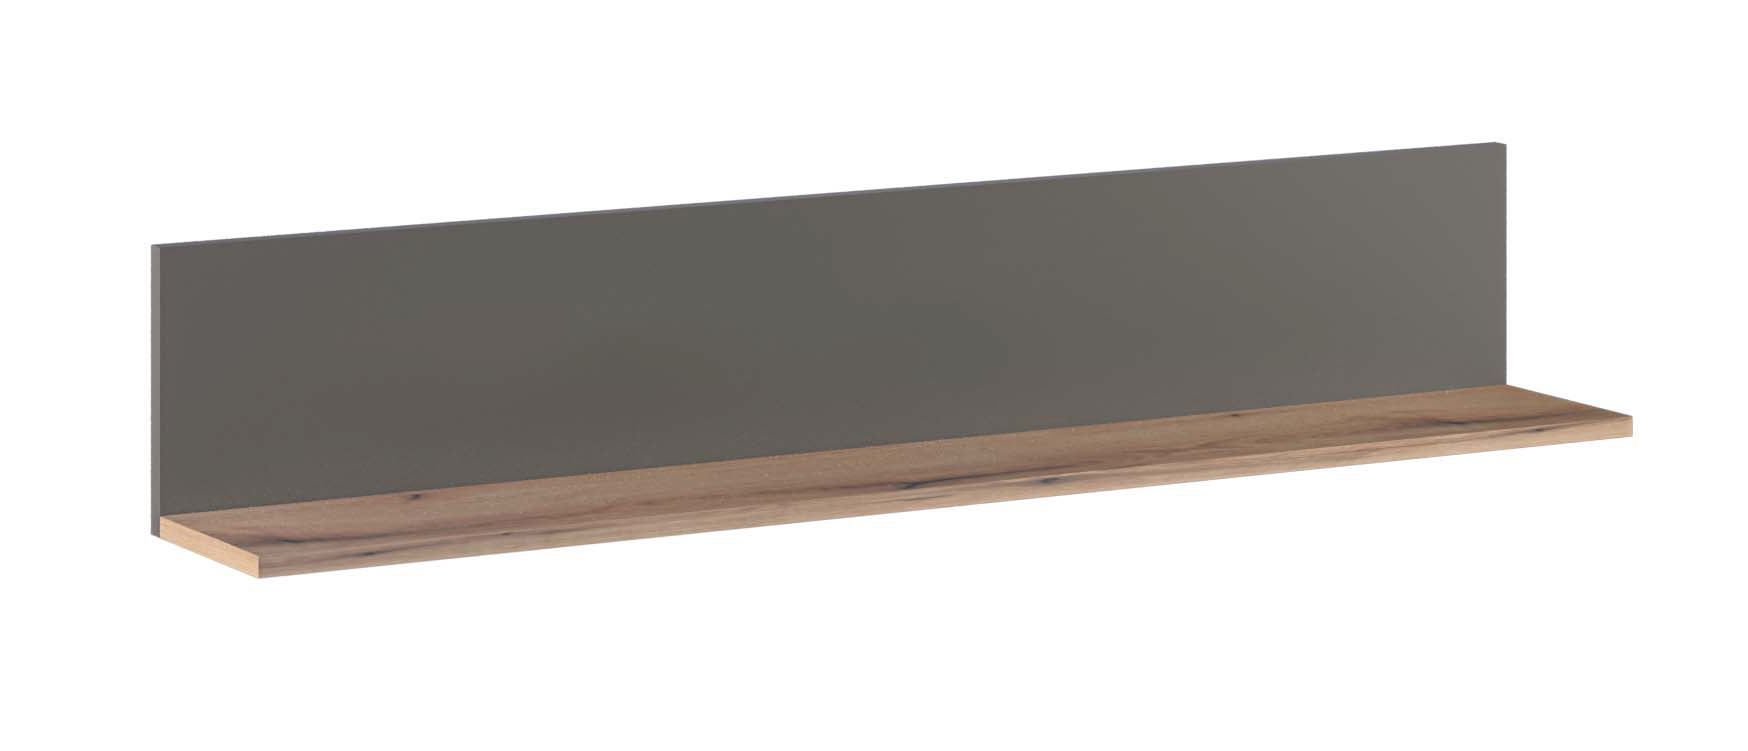 Hangplank / wandplank Sisamon 03, kleur: Artisan eik / grijs - Afmetingen: 24 x 137 x 21 cm (H x B x D)